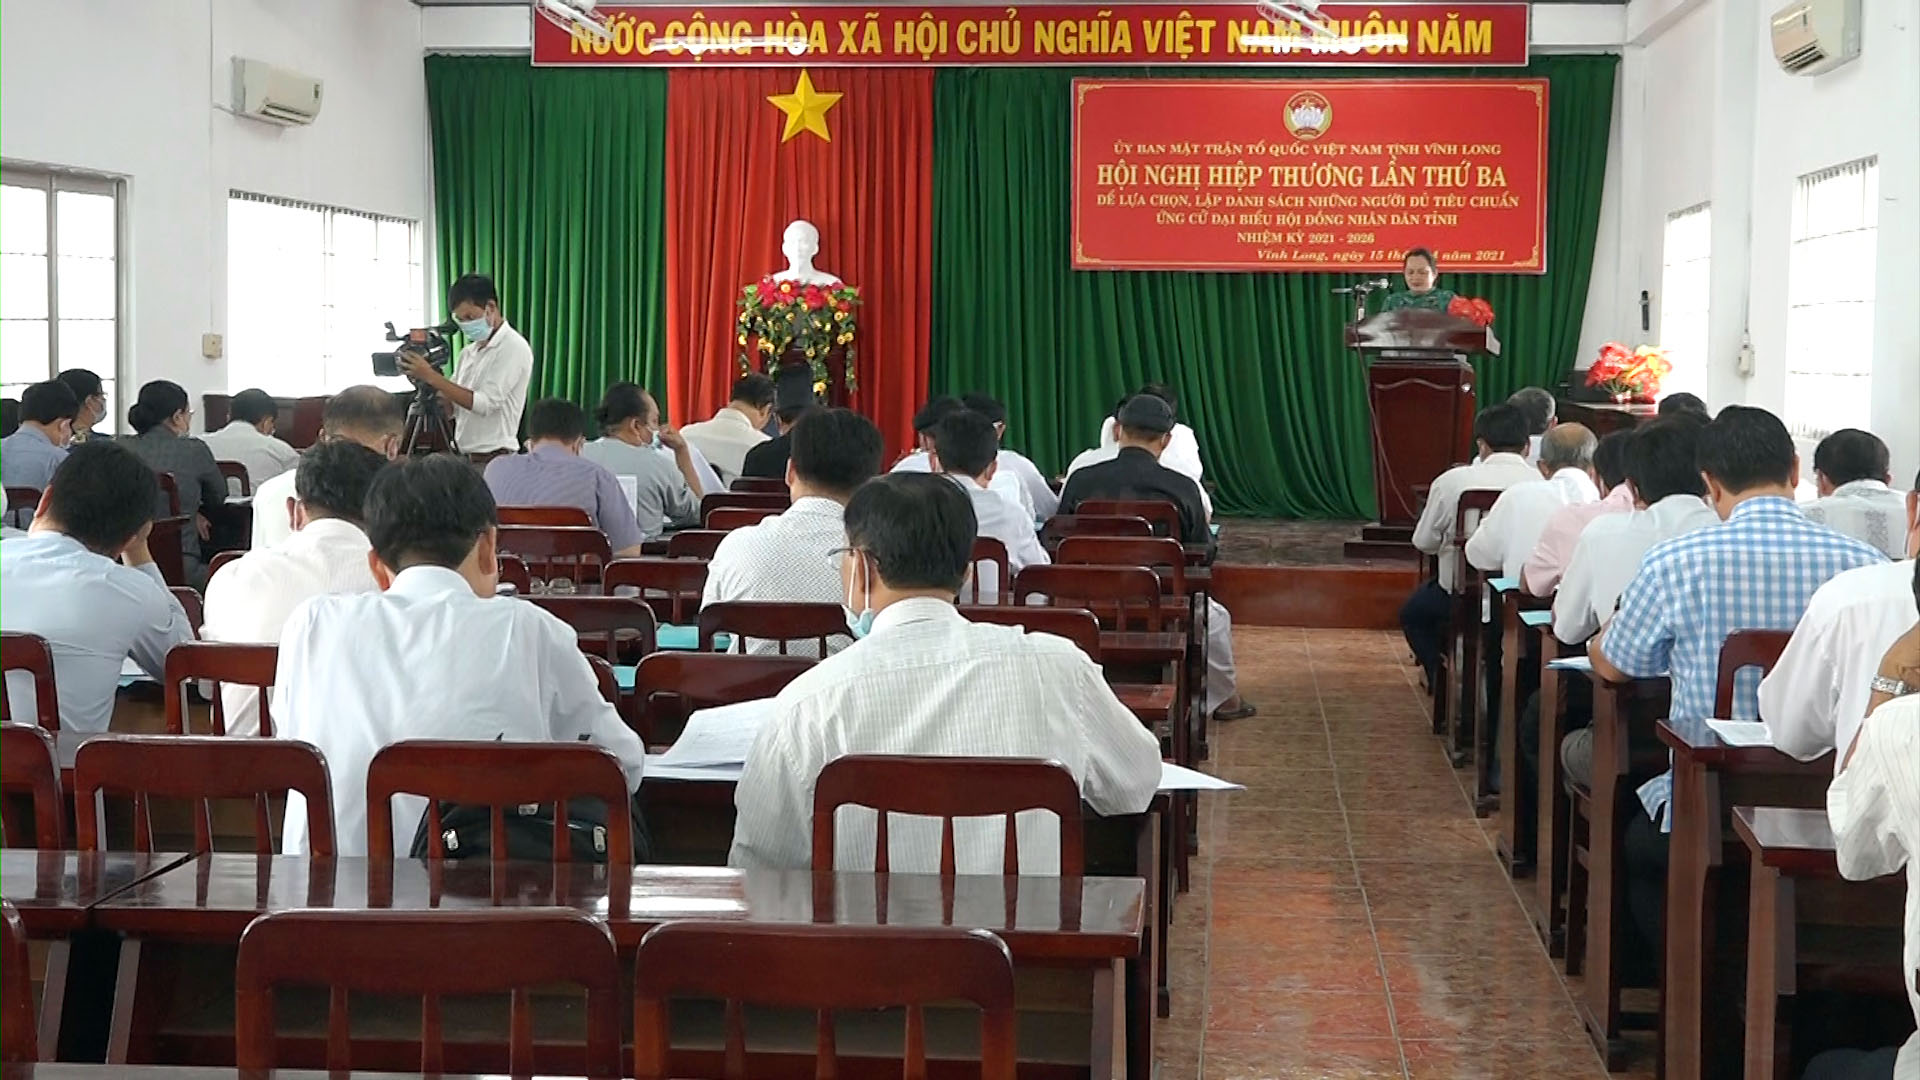 Hội nghị hiệp thương lần thứ 3 được Ban Thường trực UBMTTQ Việt Nam tỉnh tổ chức vào sáng 15/4.